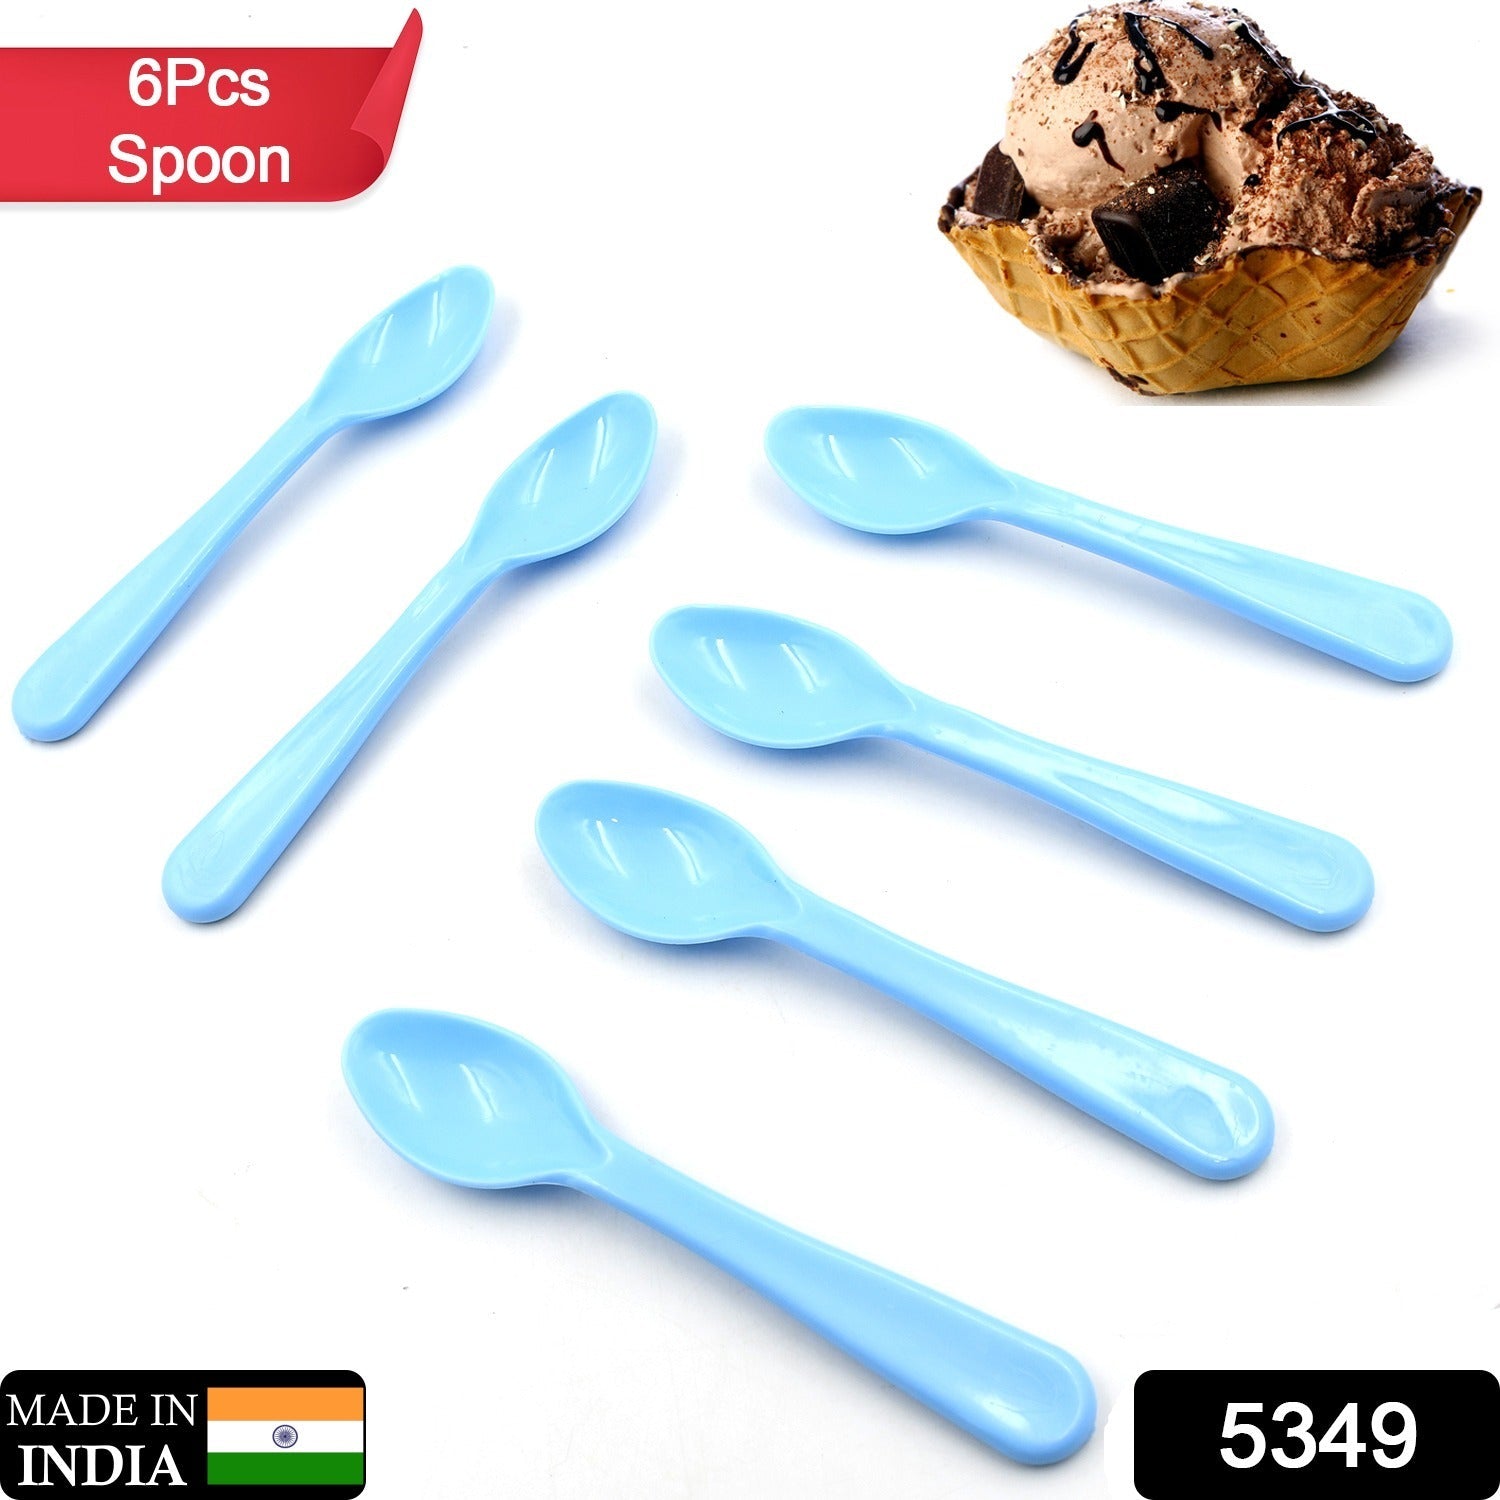 Food Plastic Spoon Set, Plastic Table Spoon Set Plastic Tea Spoon, Coffee with ABS Plastic, Heat-Resistant Spoon (6 Pc Set)